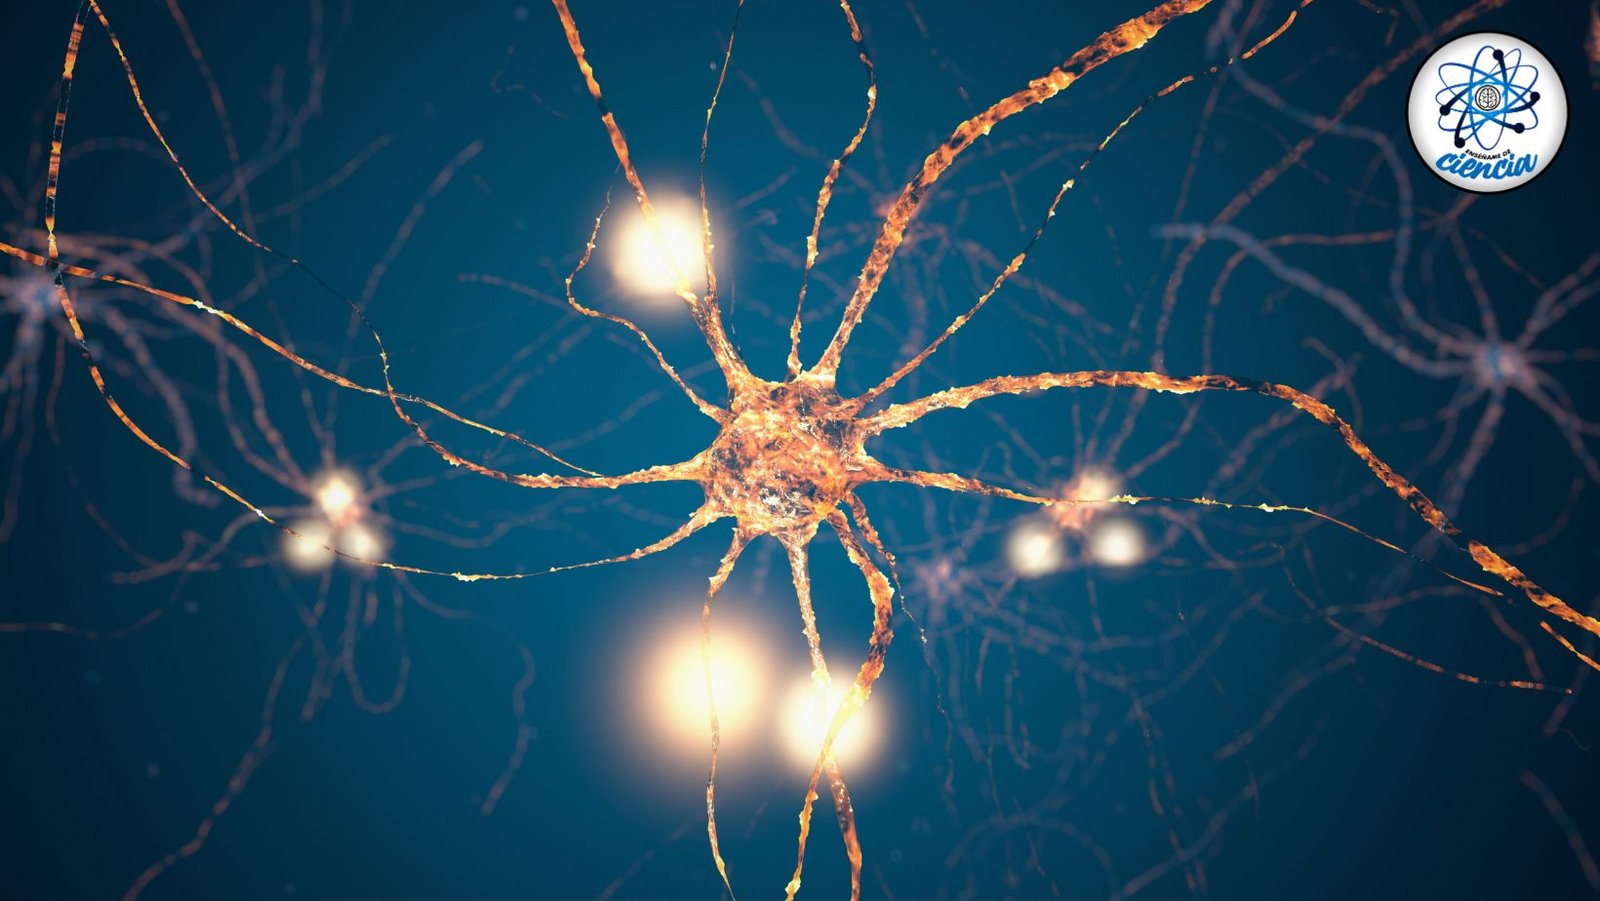 Descubren señales cerebrales únicas que transforman nuestra comprensión del cerebro humano